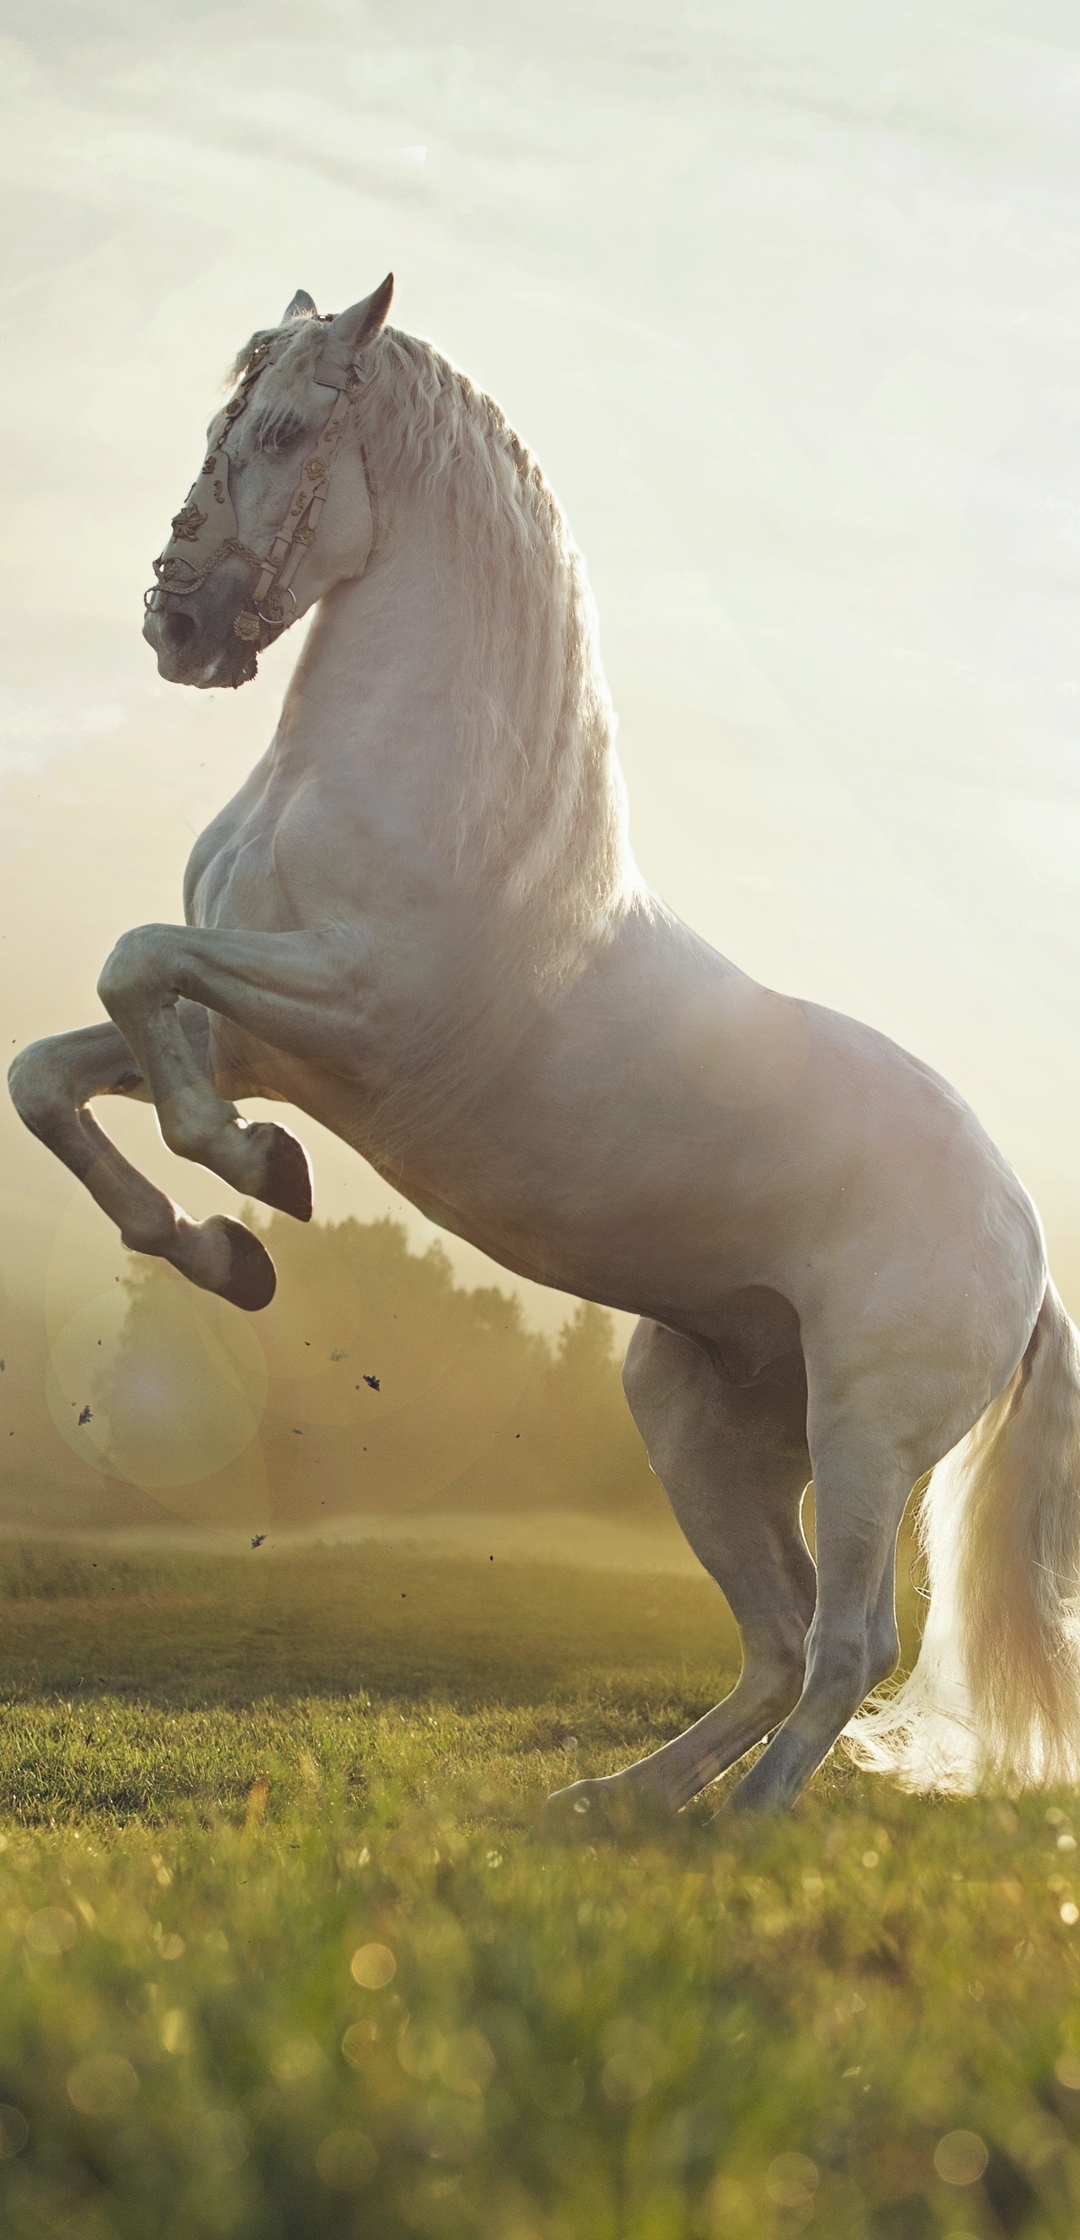 Картинка: Лошадь, белая, поле, стойка, пейзаж, солнце, туман